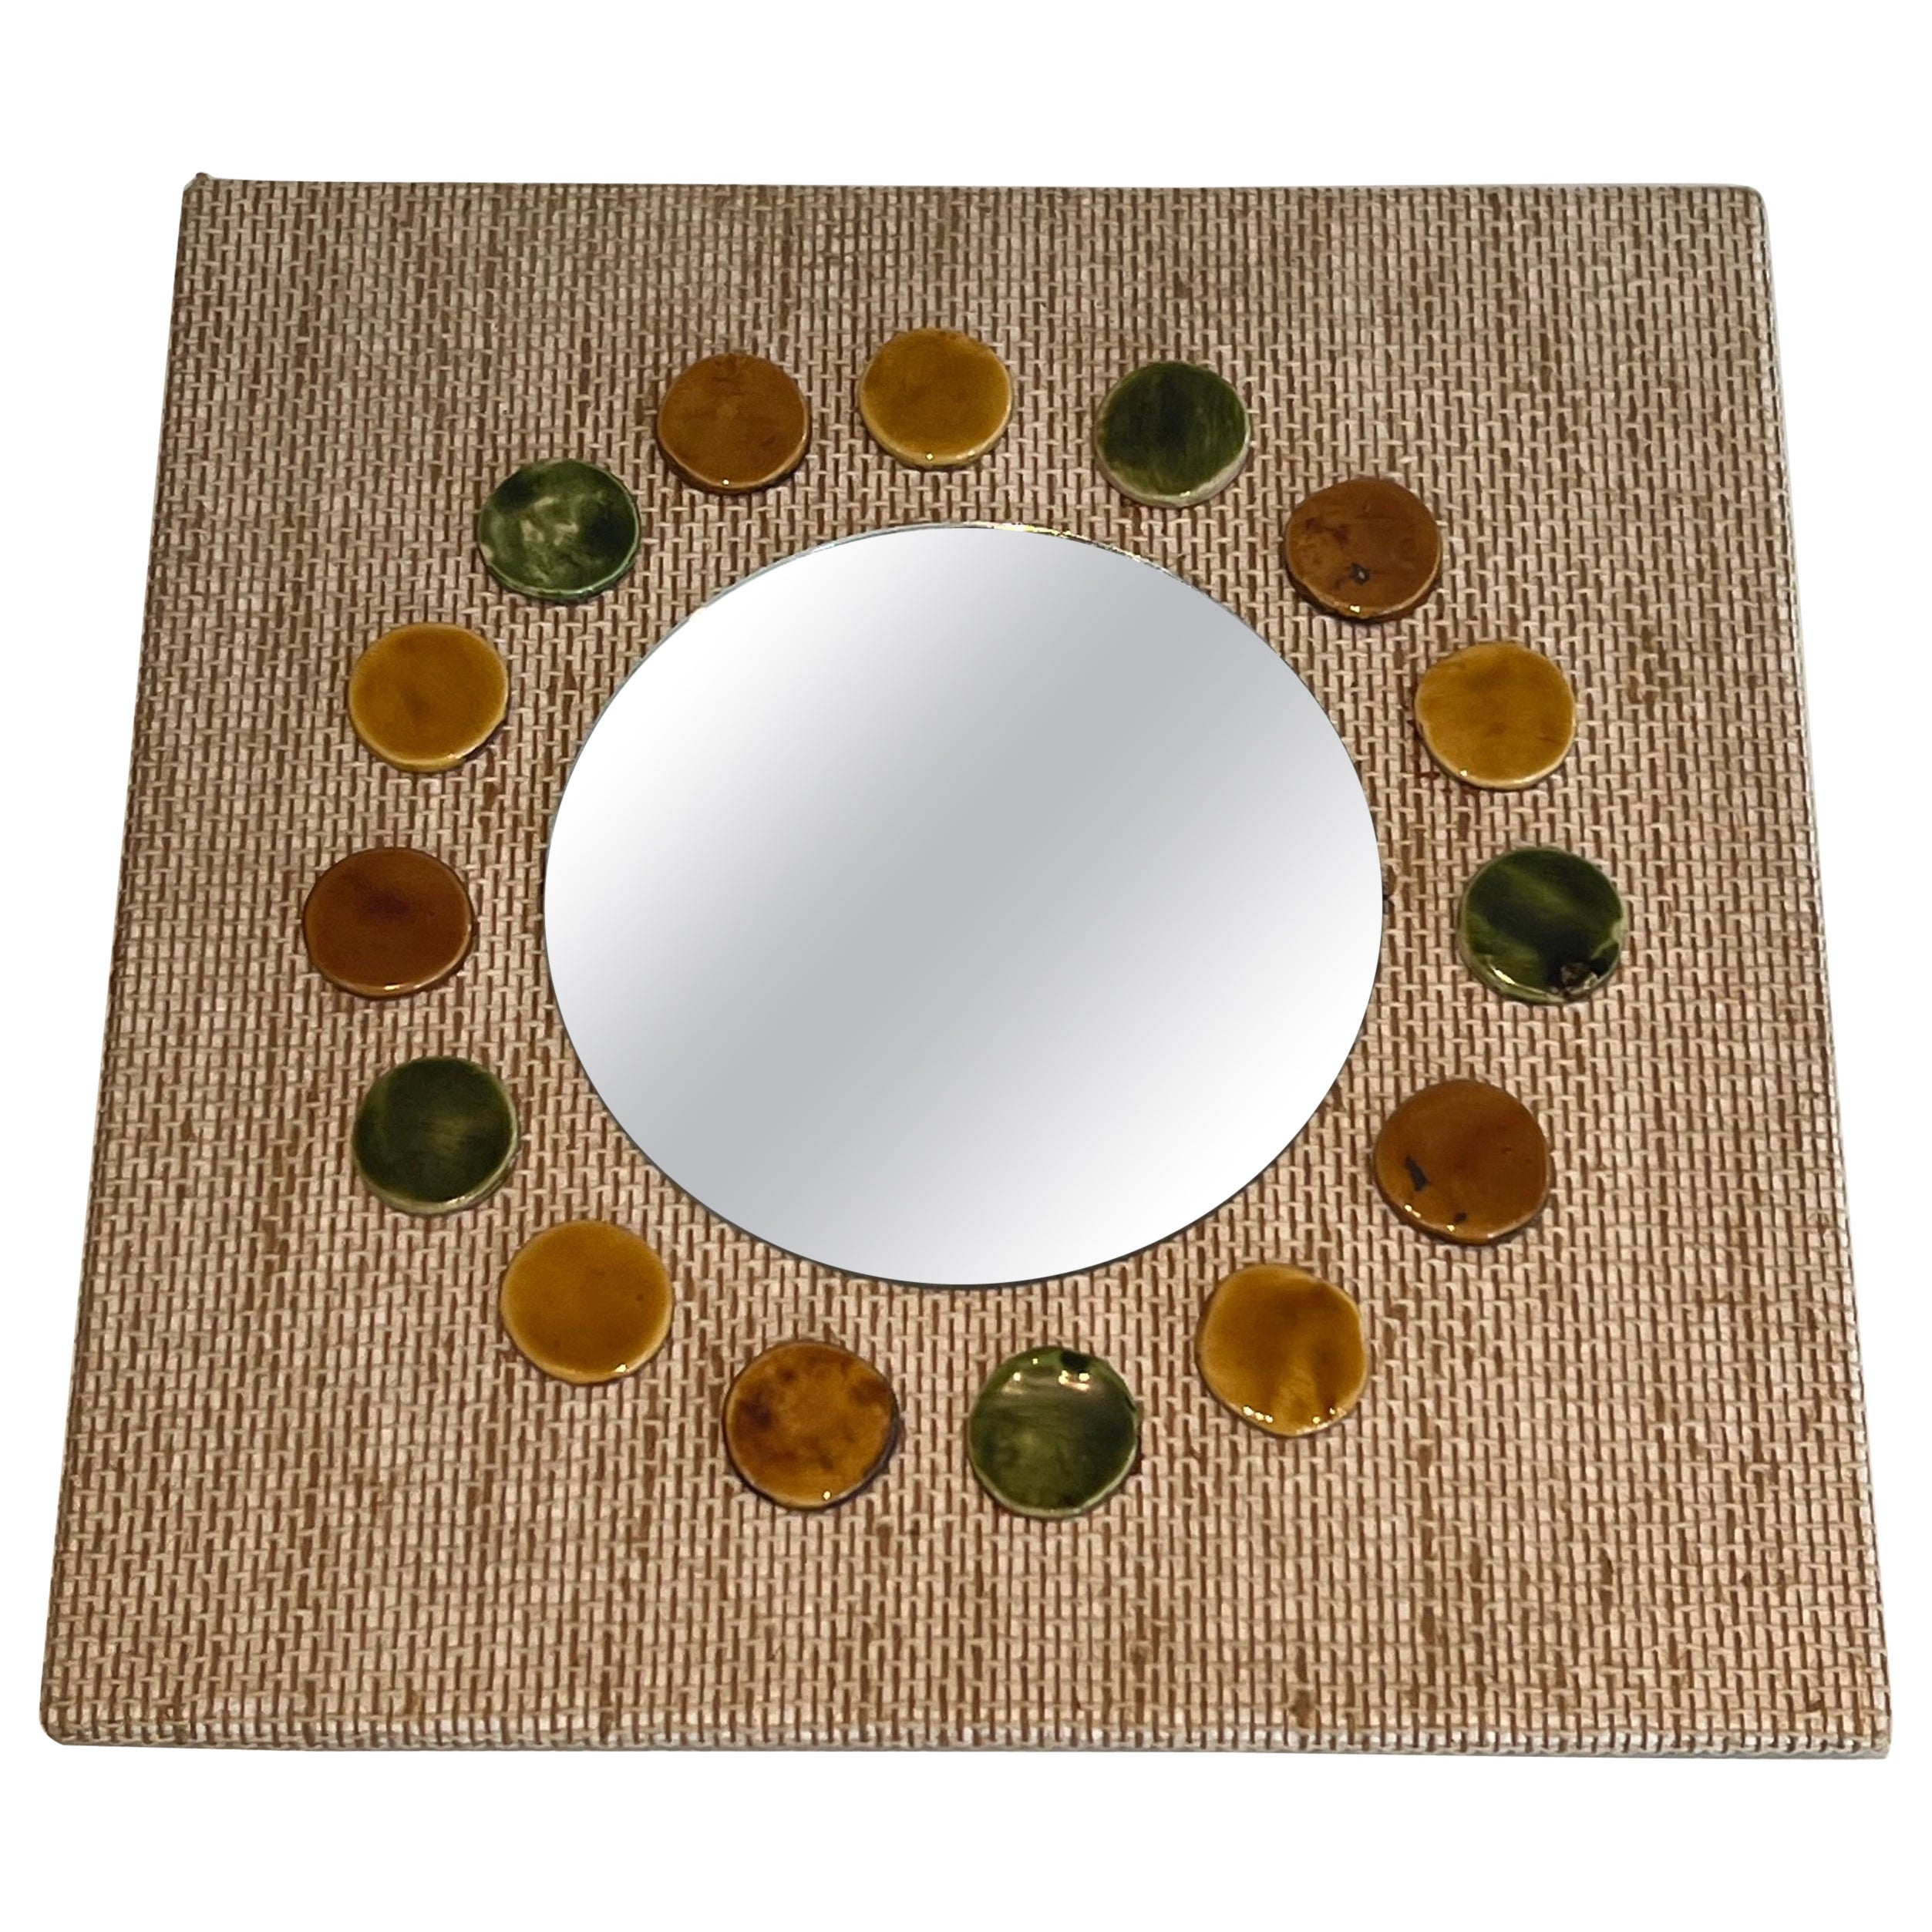 Small square mirror made of raffia en colored ceramics round elements.  For Sale